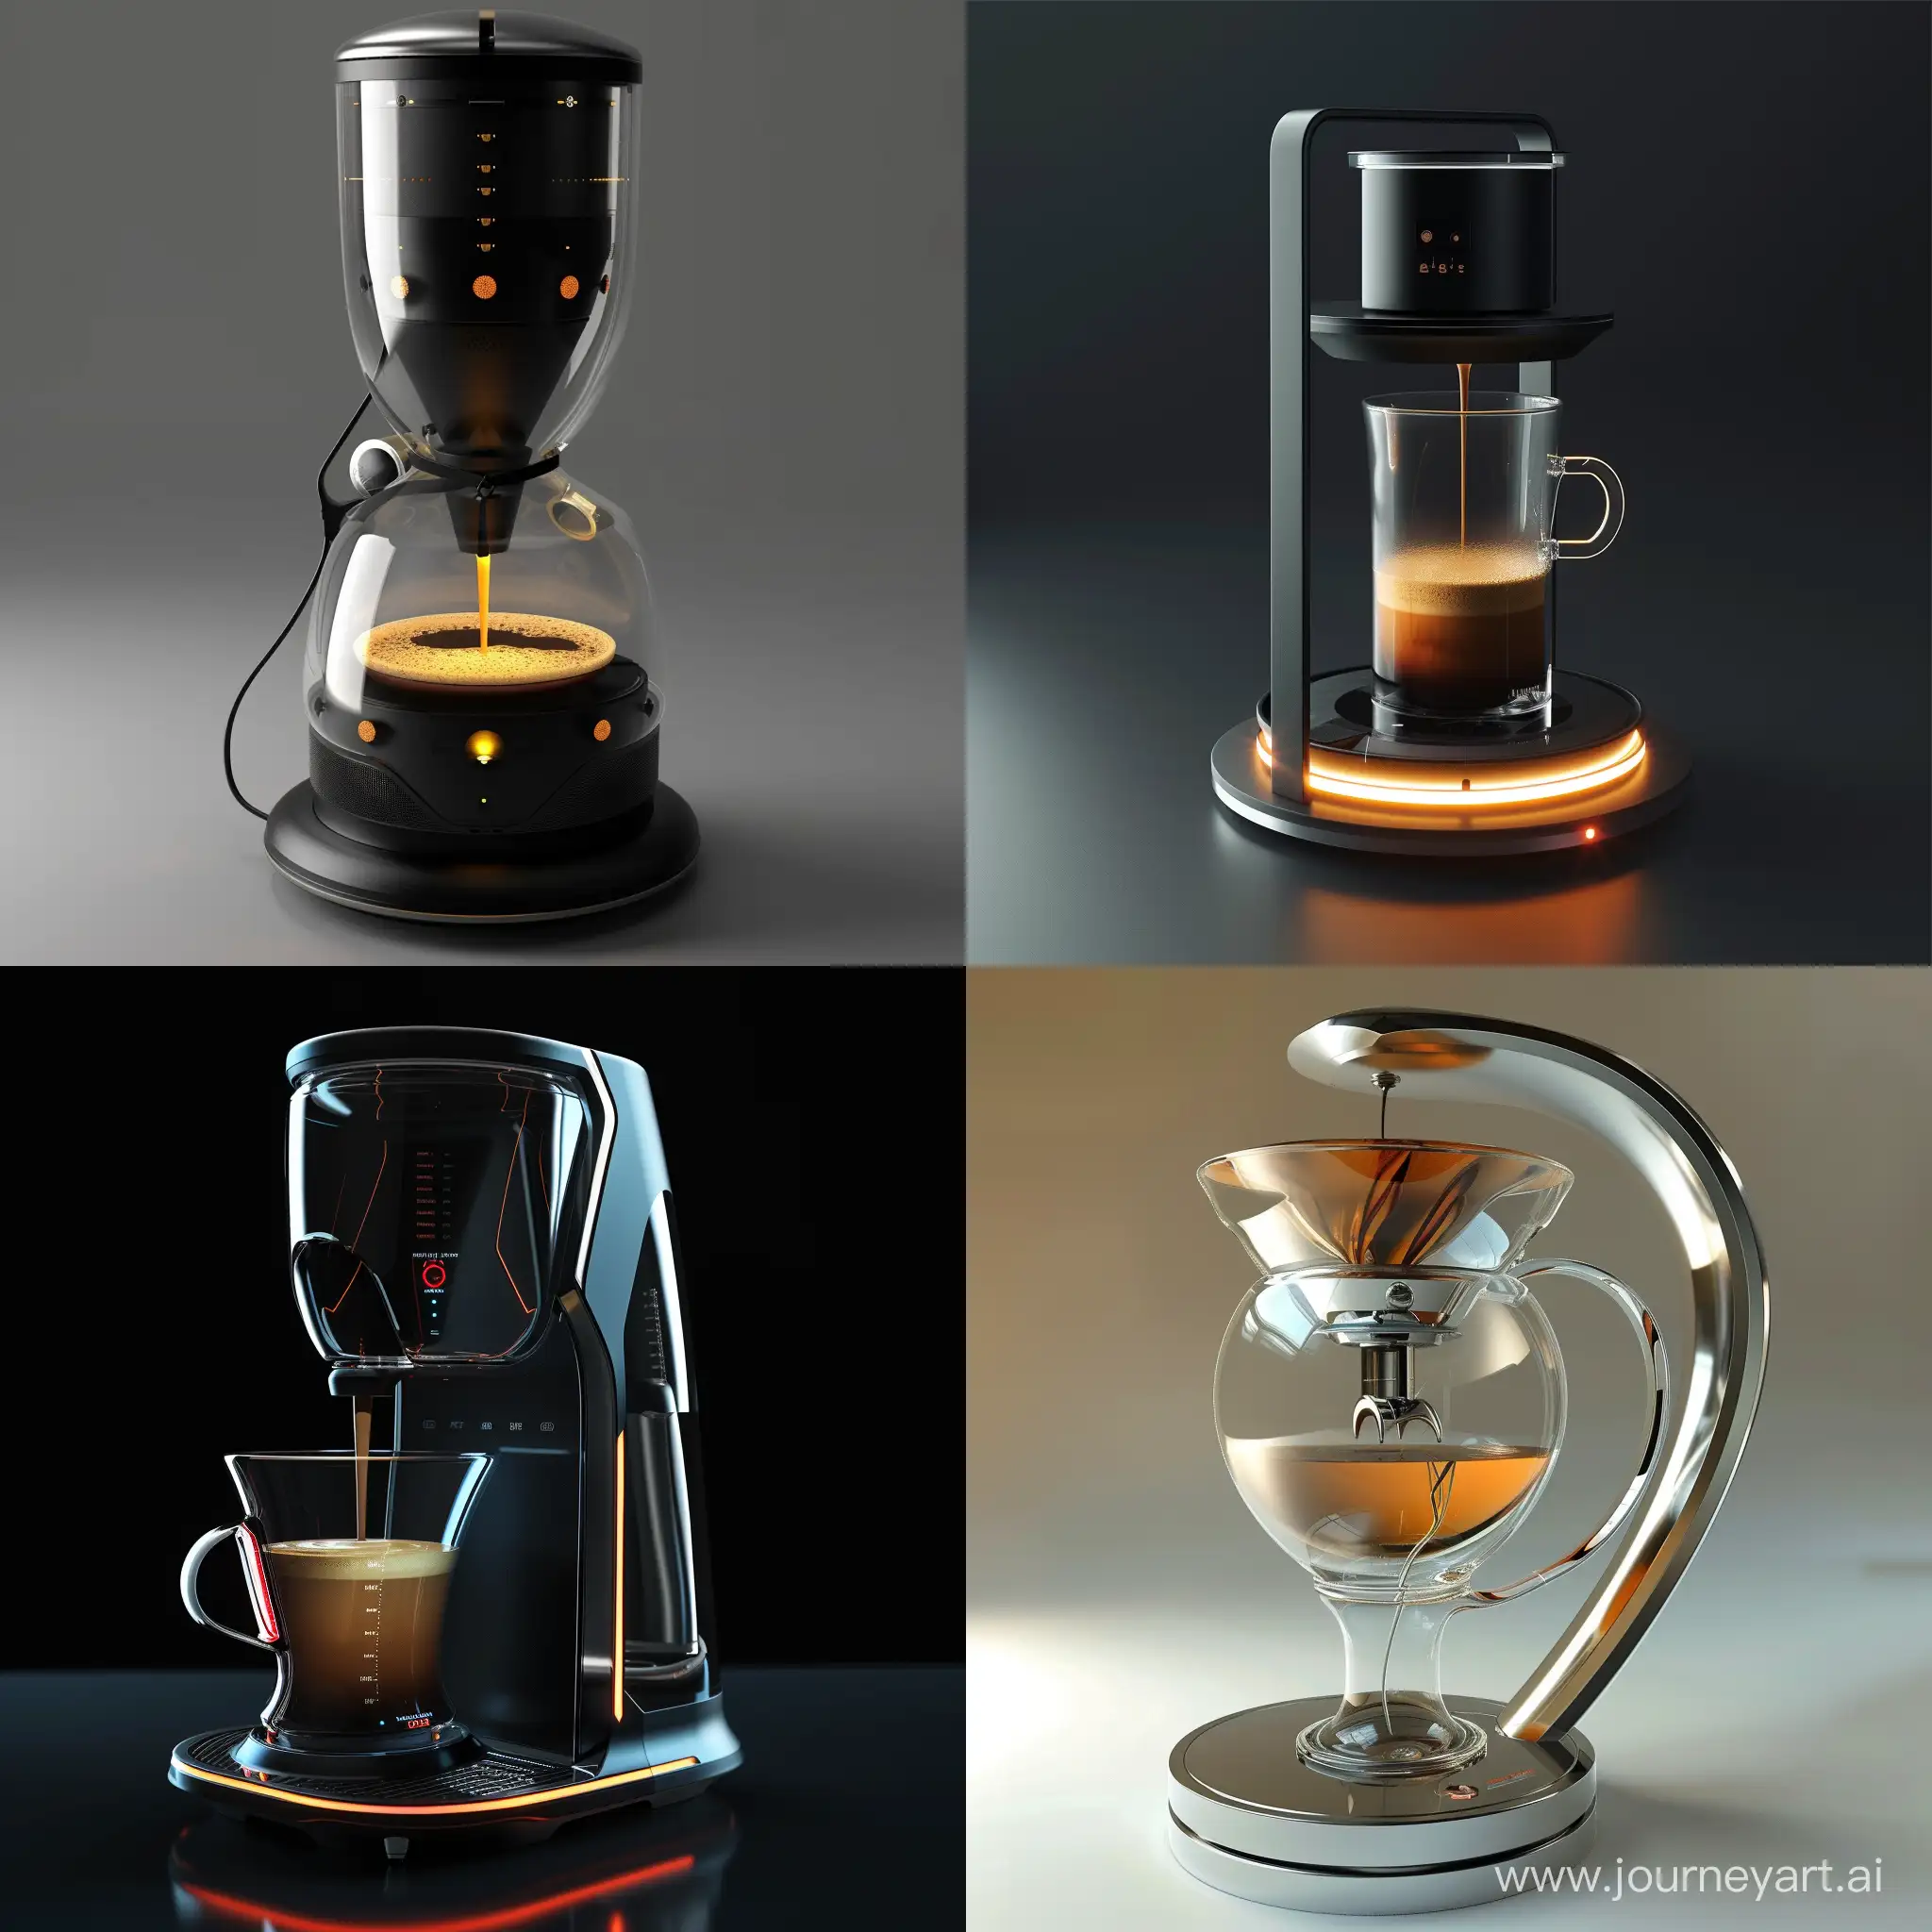 Futuristic-Coffee-Maker-in-Square-Aspect-Ratio